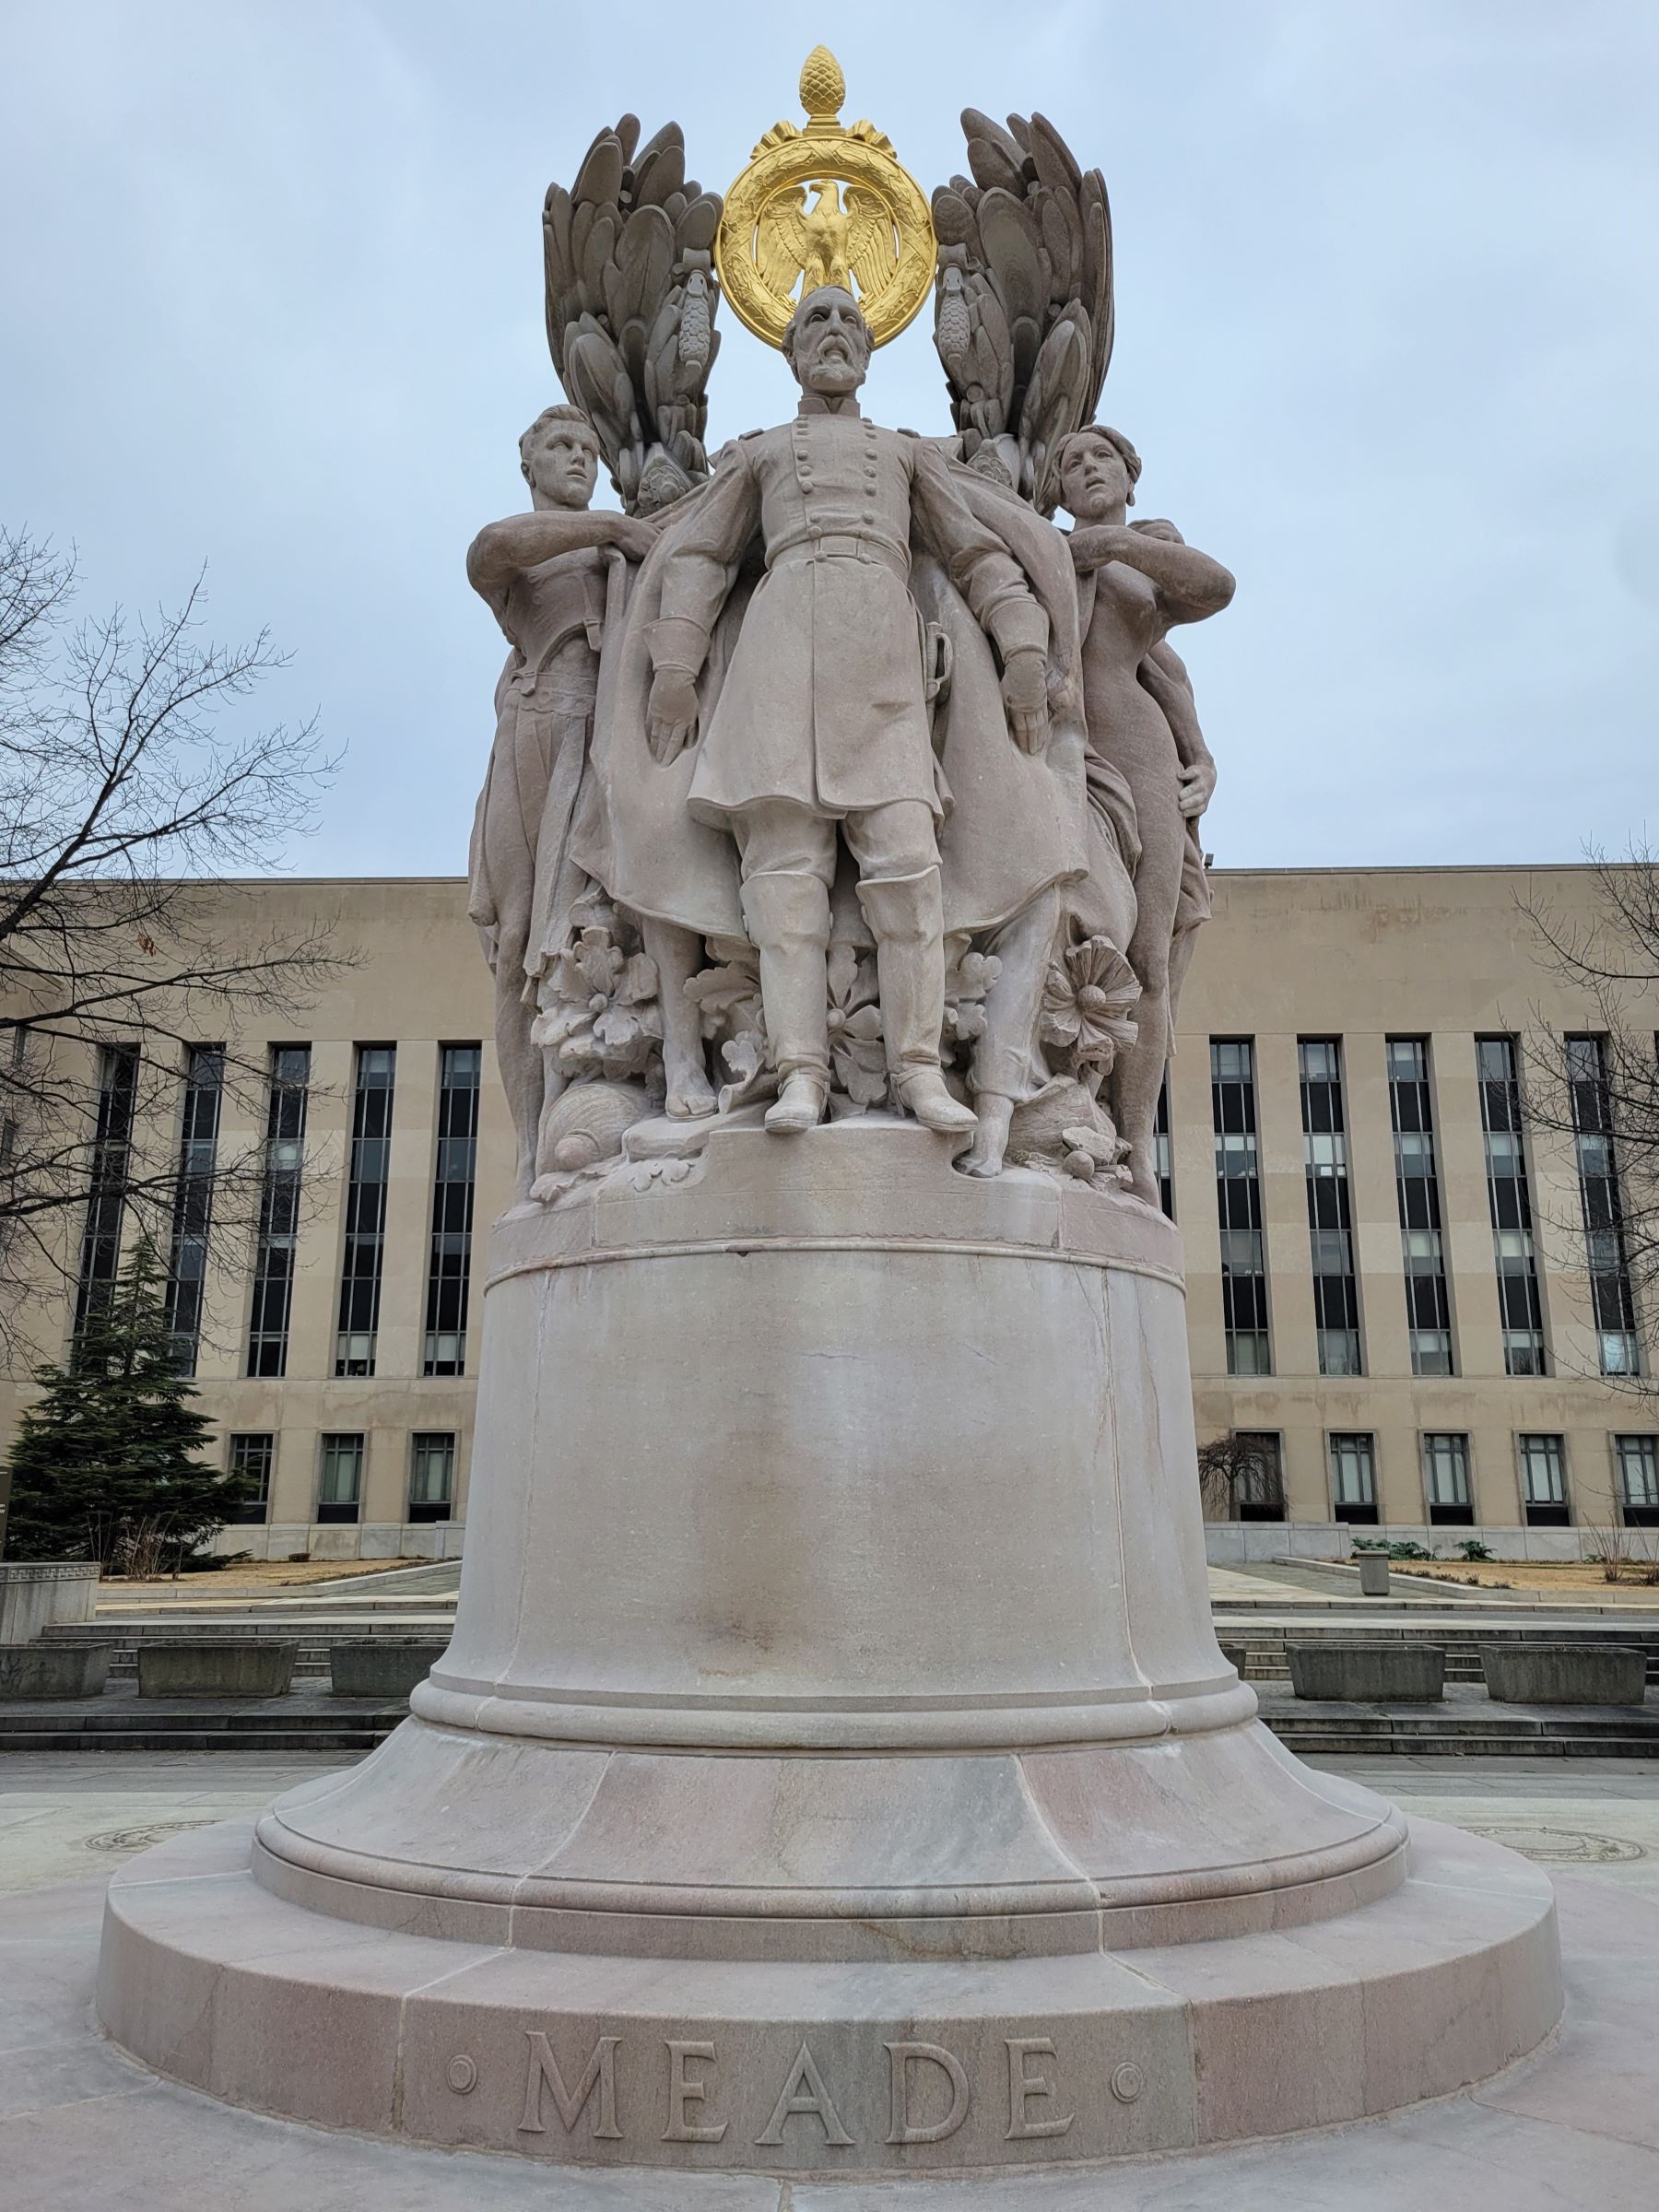 상이군인 기념물(American Veterans Disabled for Life Memorial)과 의사당 주변 내셔널몰의 여러 동상들